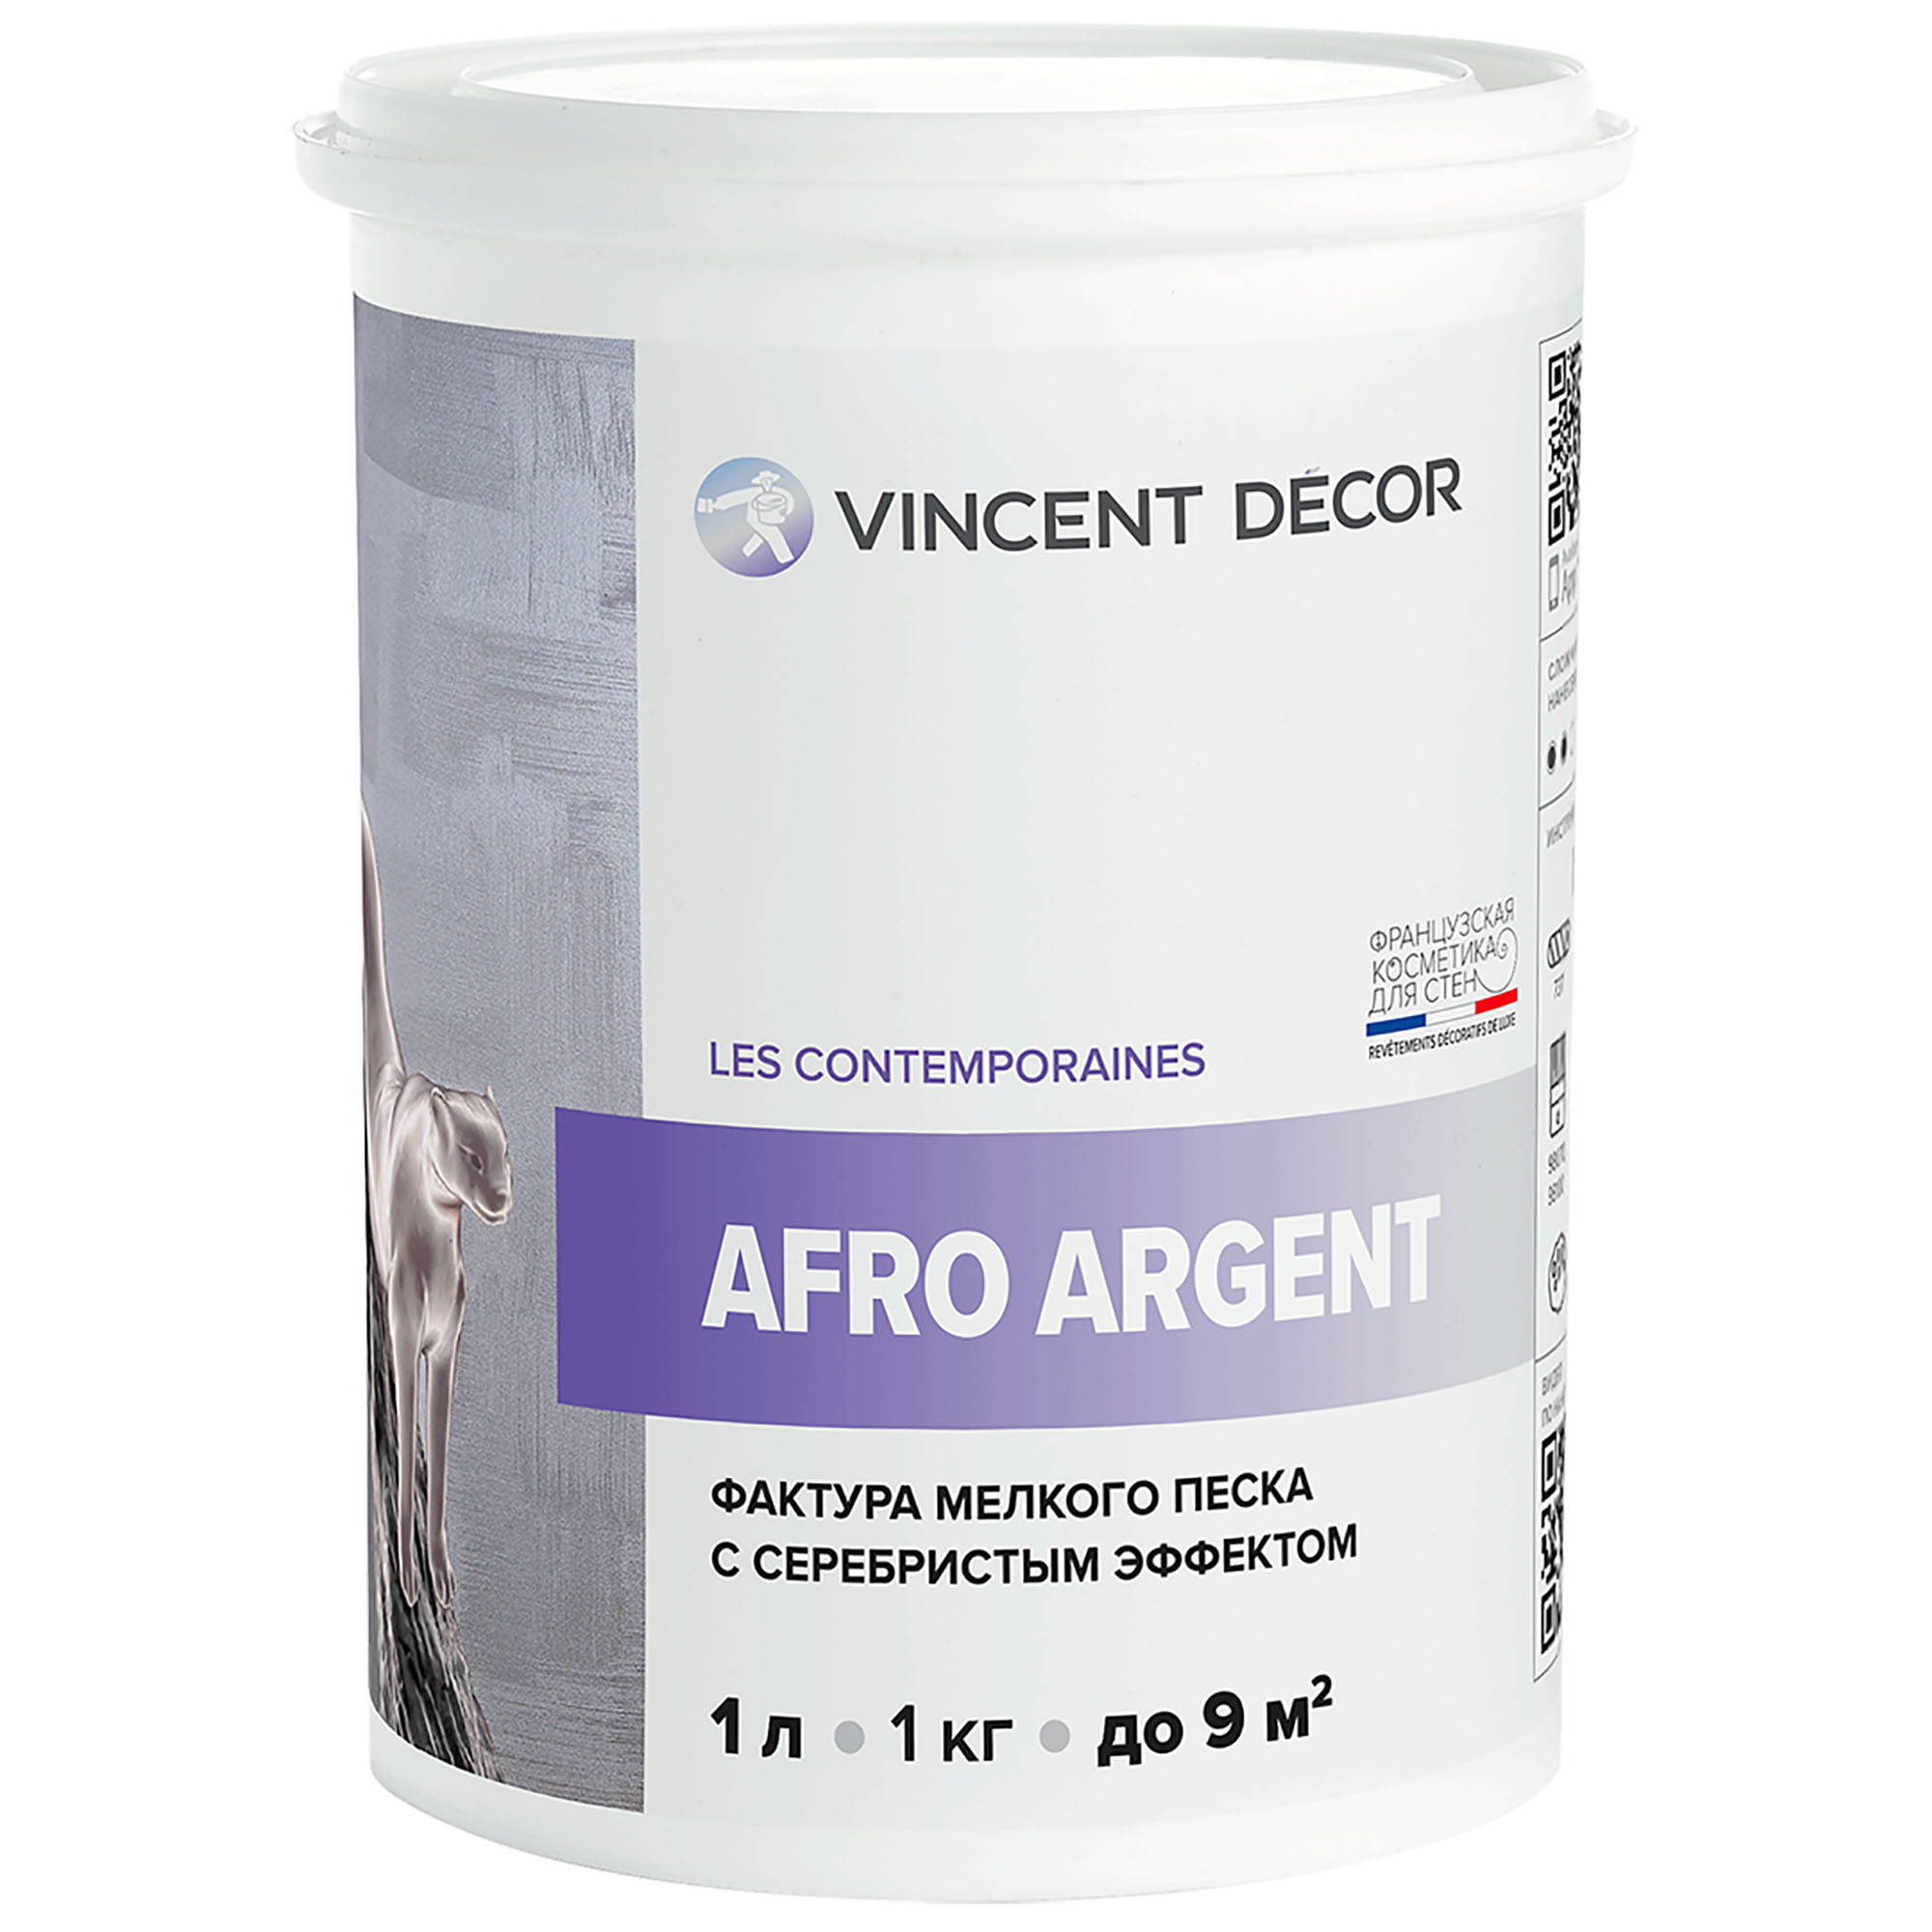 Декоративное покрытие для стен Vincent Decor Afro Argent с фактурой мелкого песка с серебристым эффектом 1 л покрытие декоративное artigiano torbellino3 3 2 5л